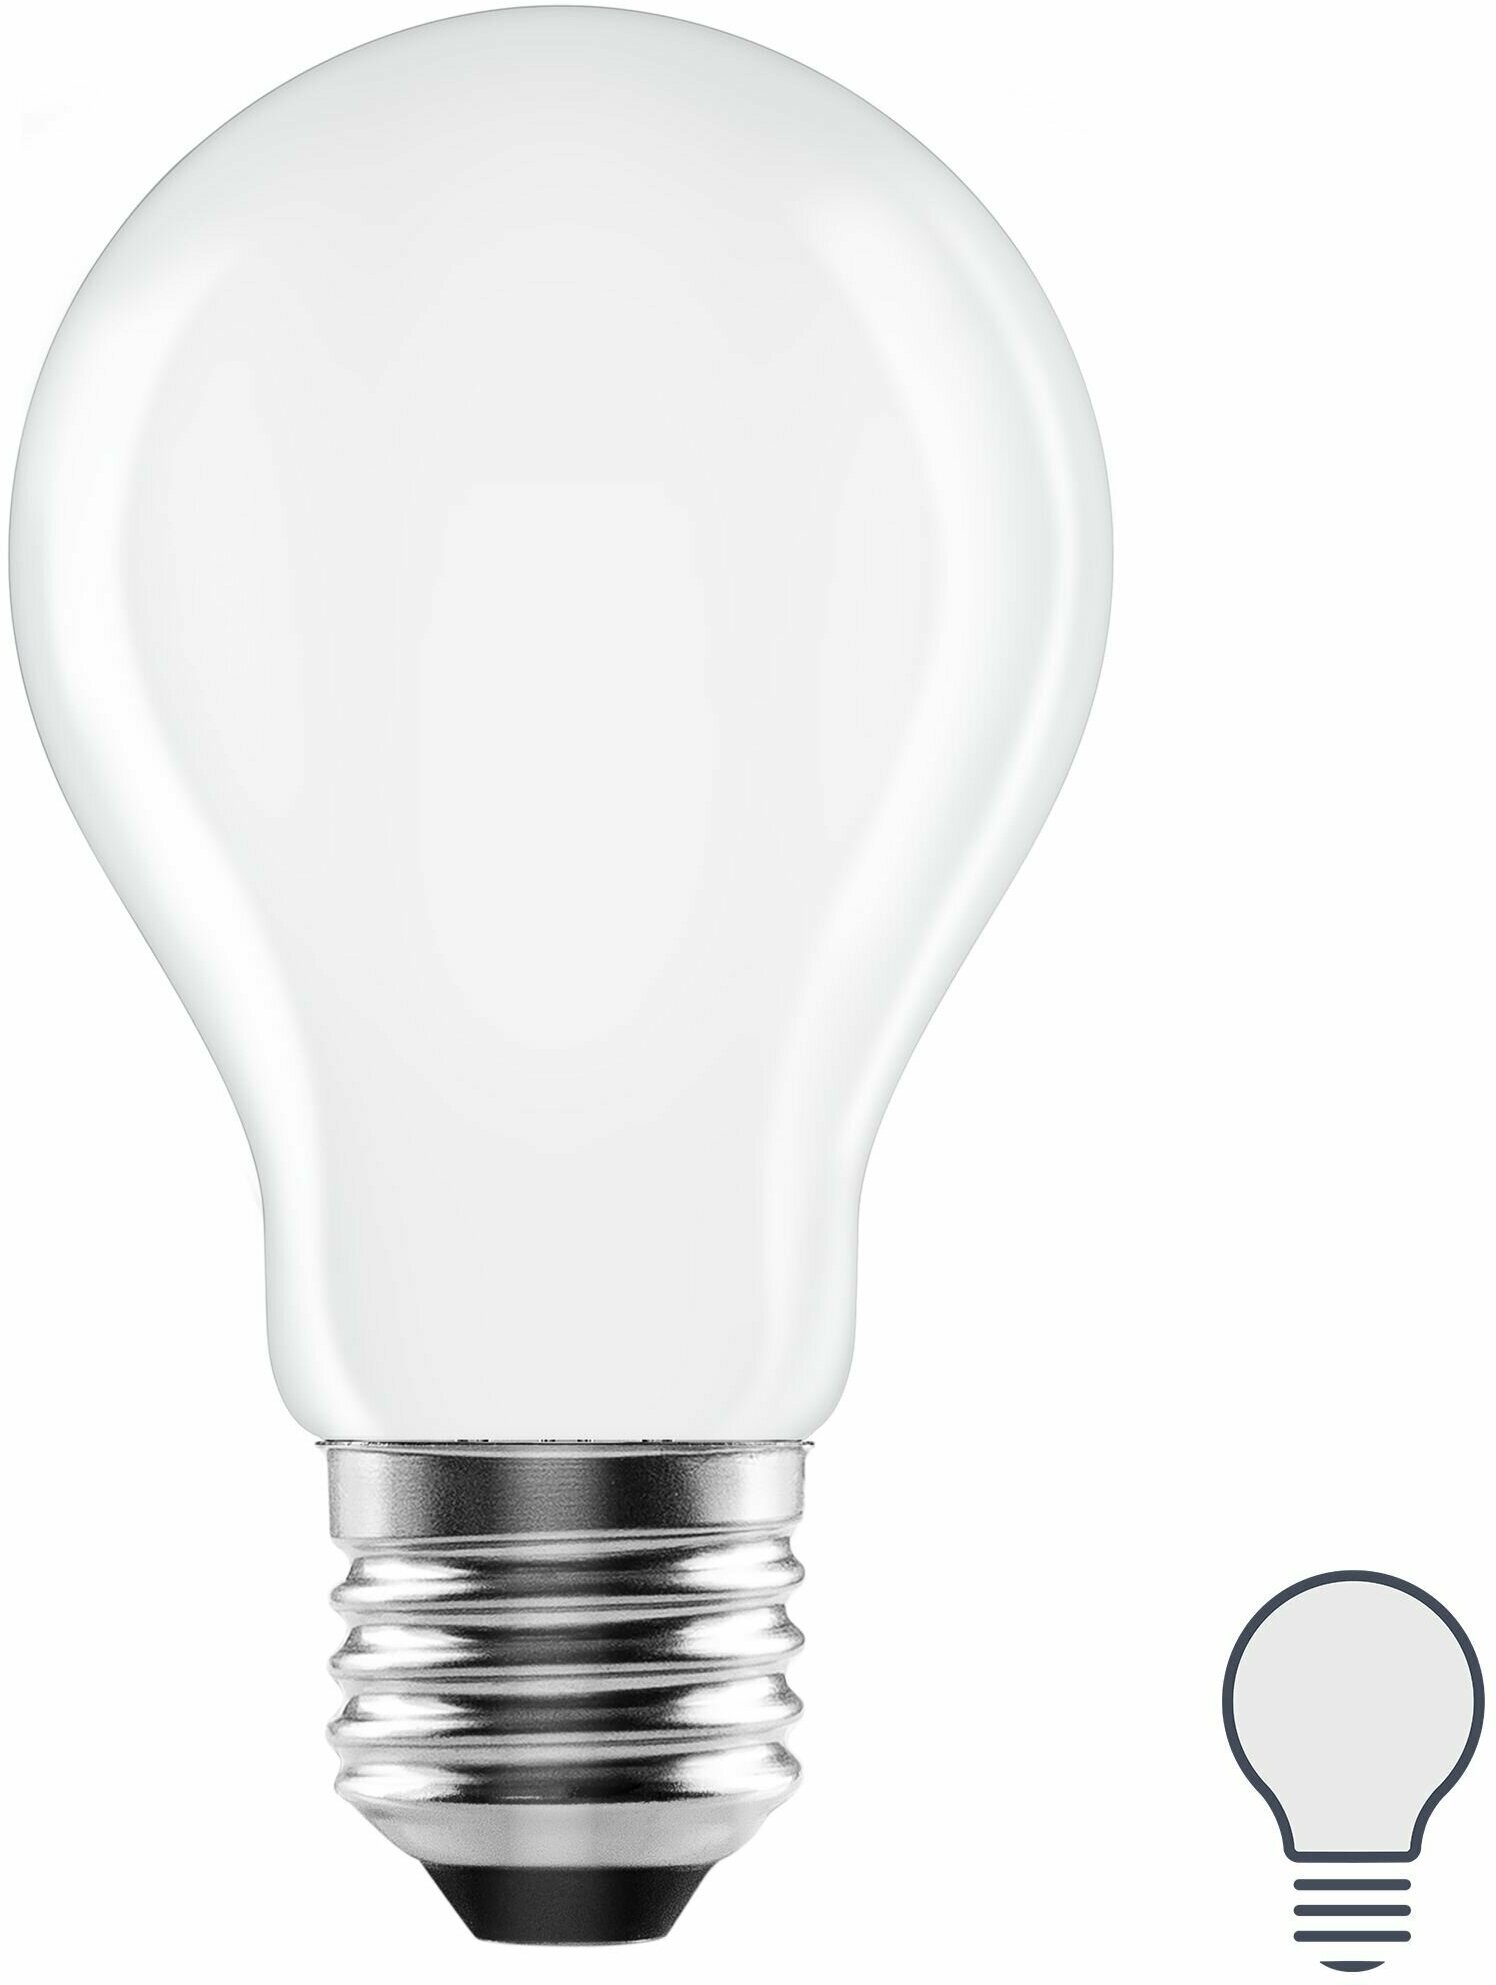 Лампа светодиодная Lexman E27 220-240 В 6 Вт груша матовая 750 лм нейтральный белый свет